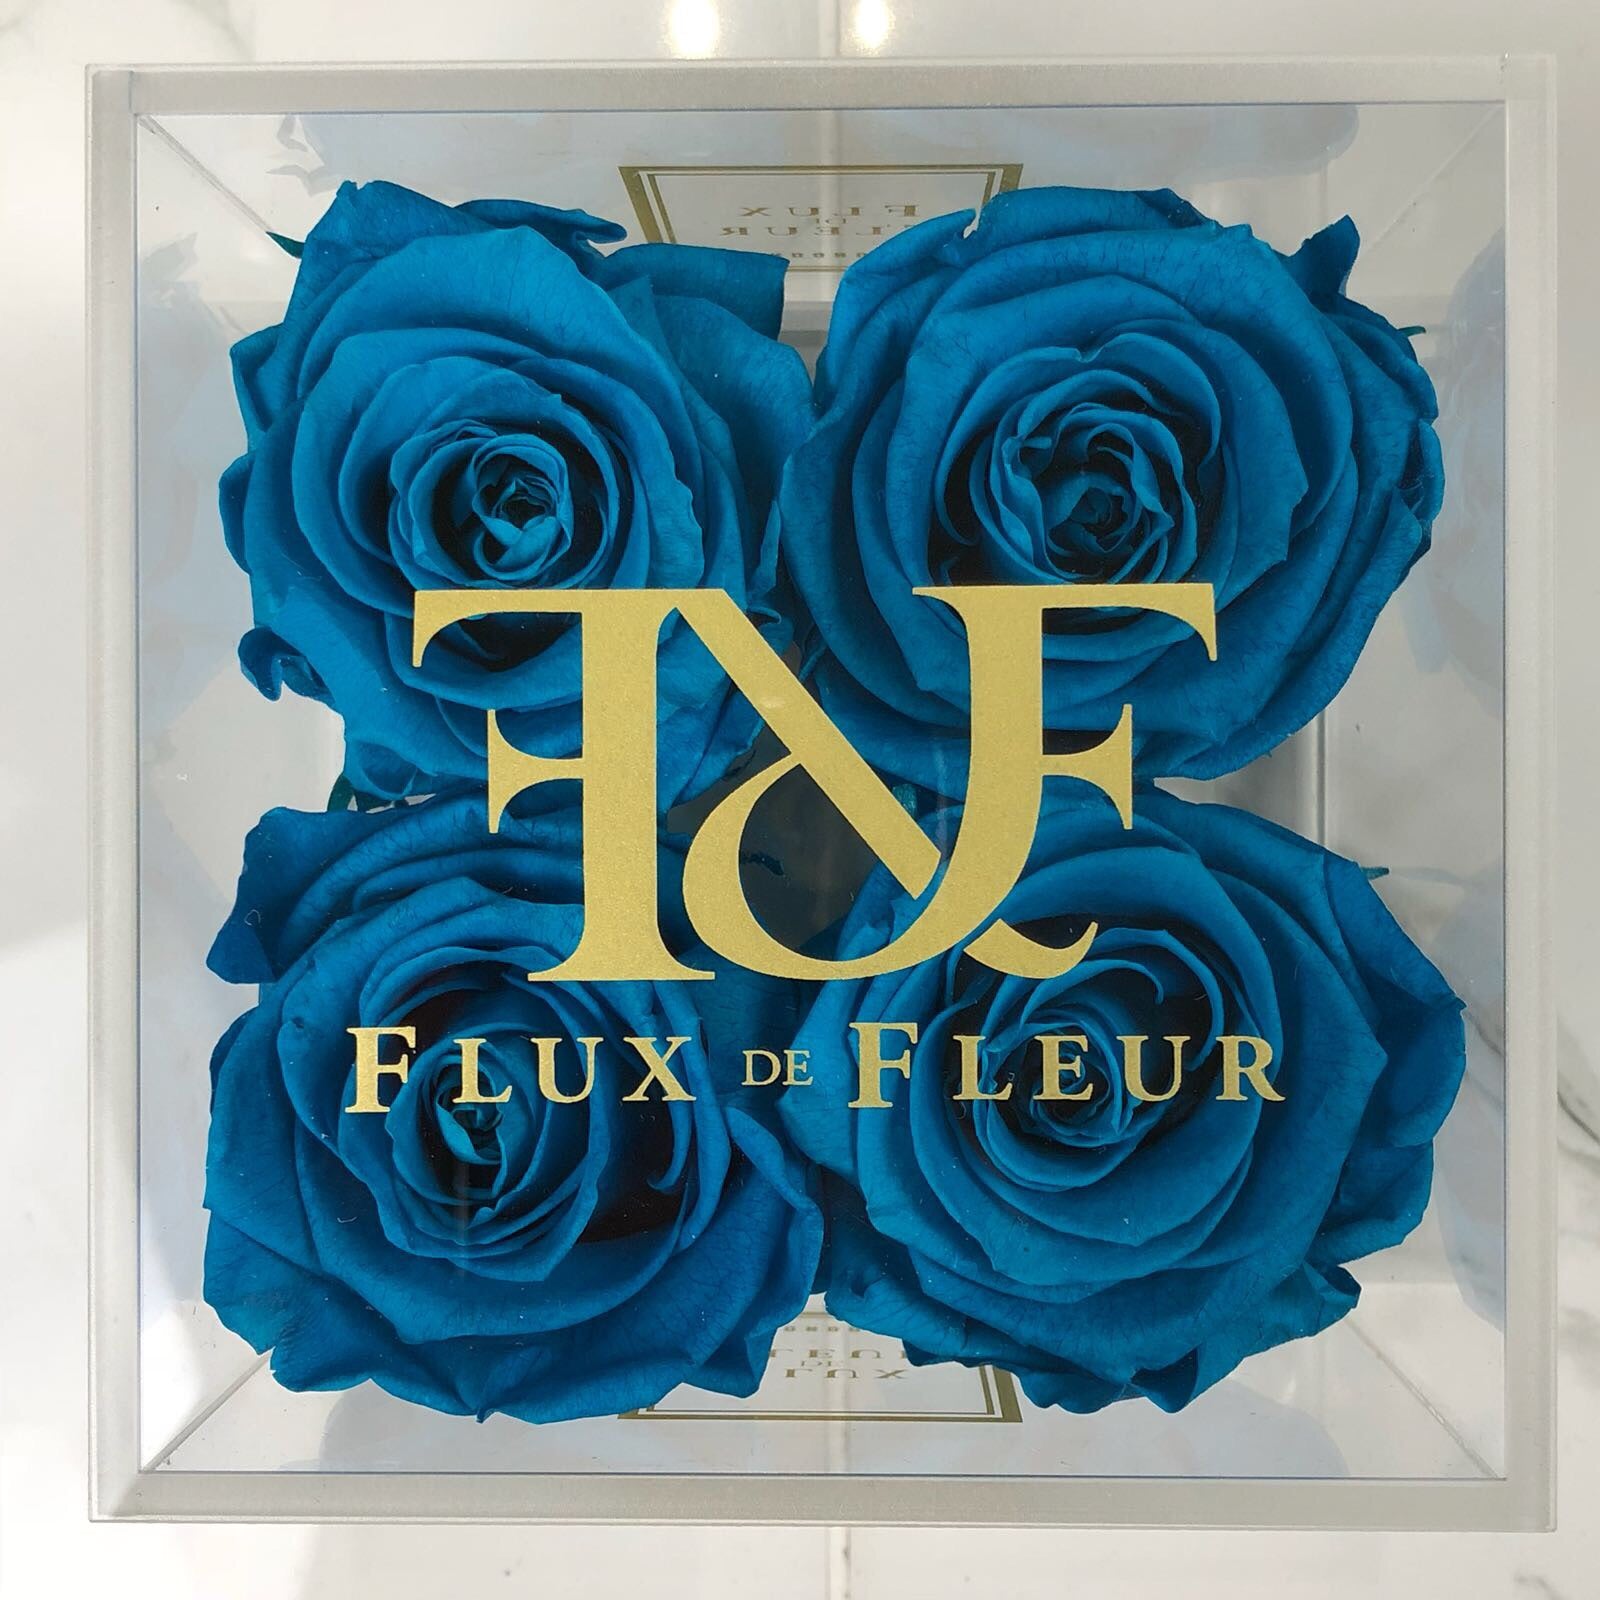 Crystal De Fleur™ Square - FLUX DE FLEUR